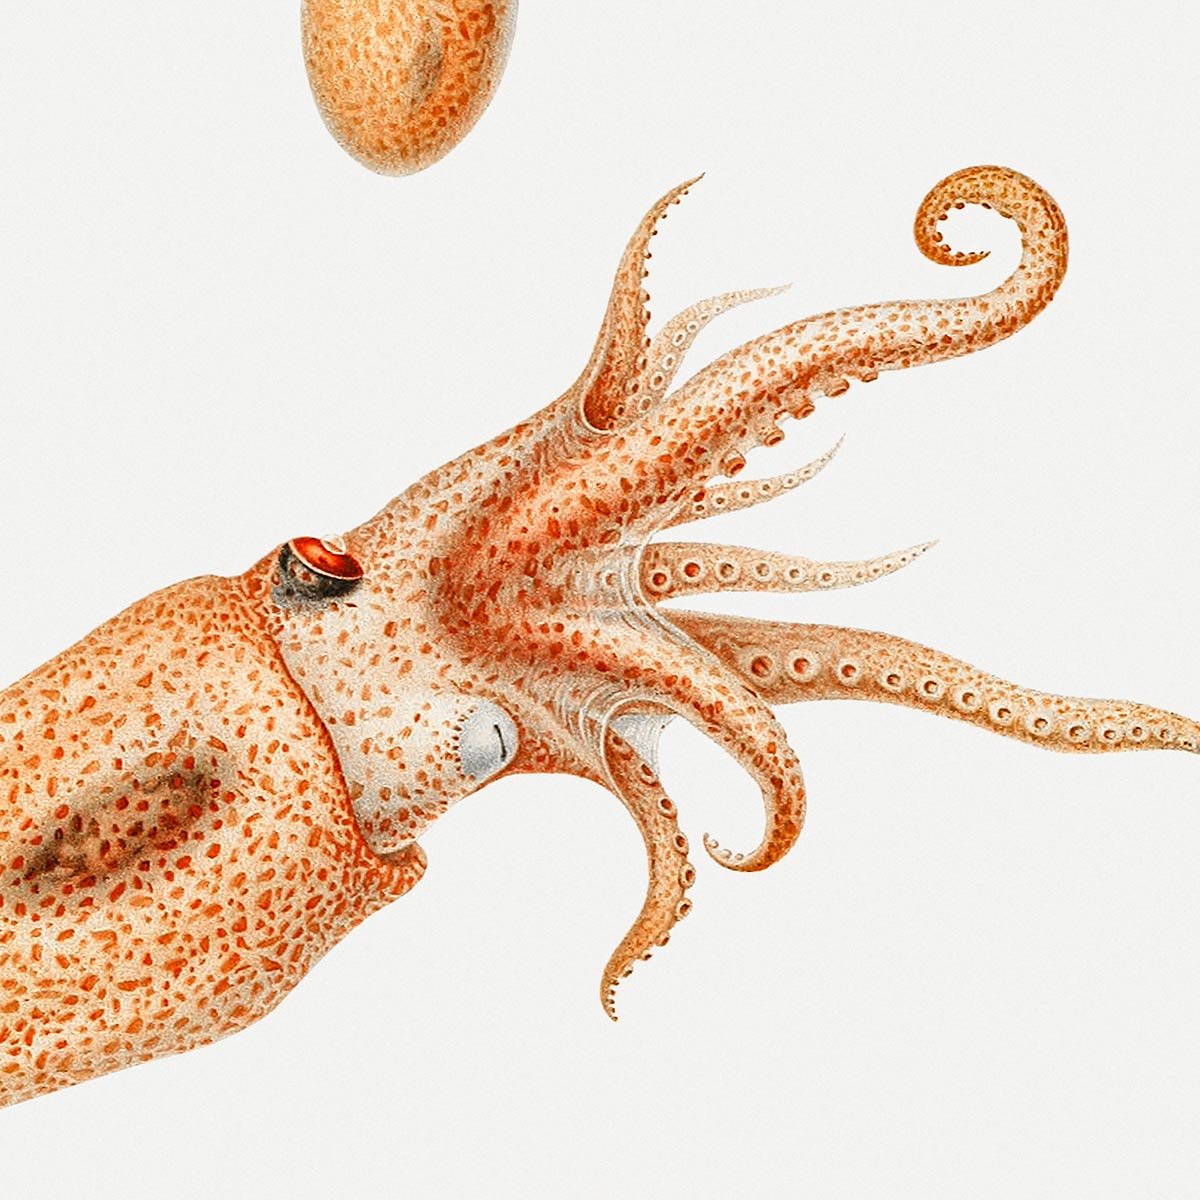 Bolitaena Octopus Poster